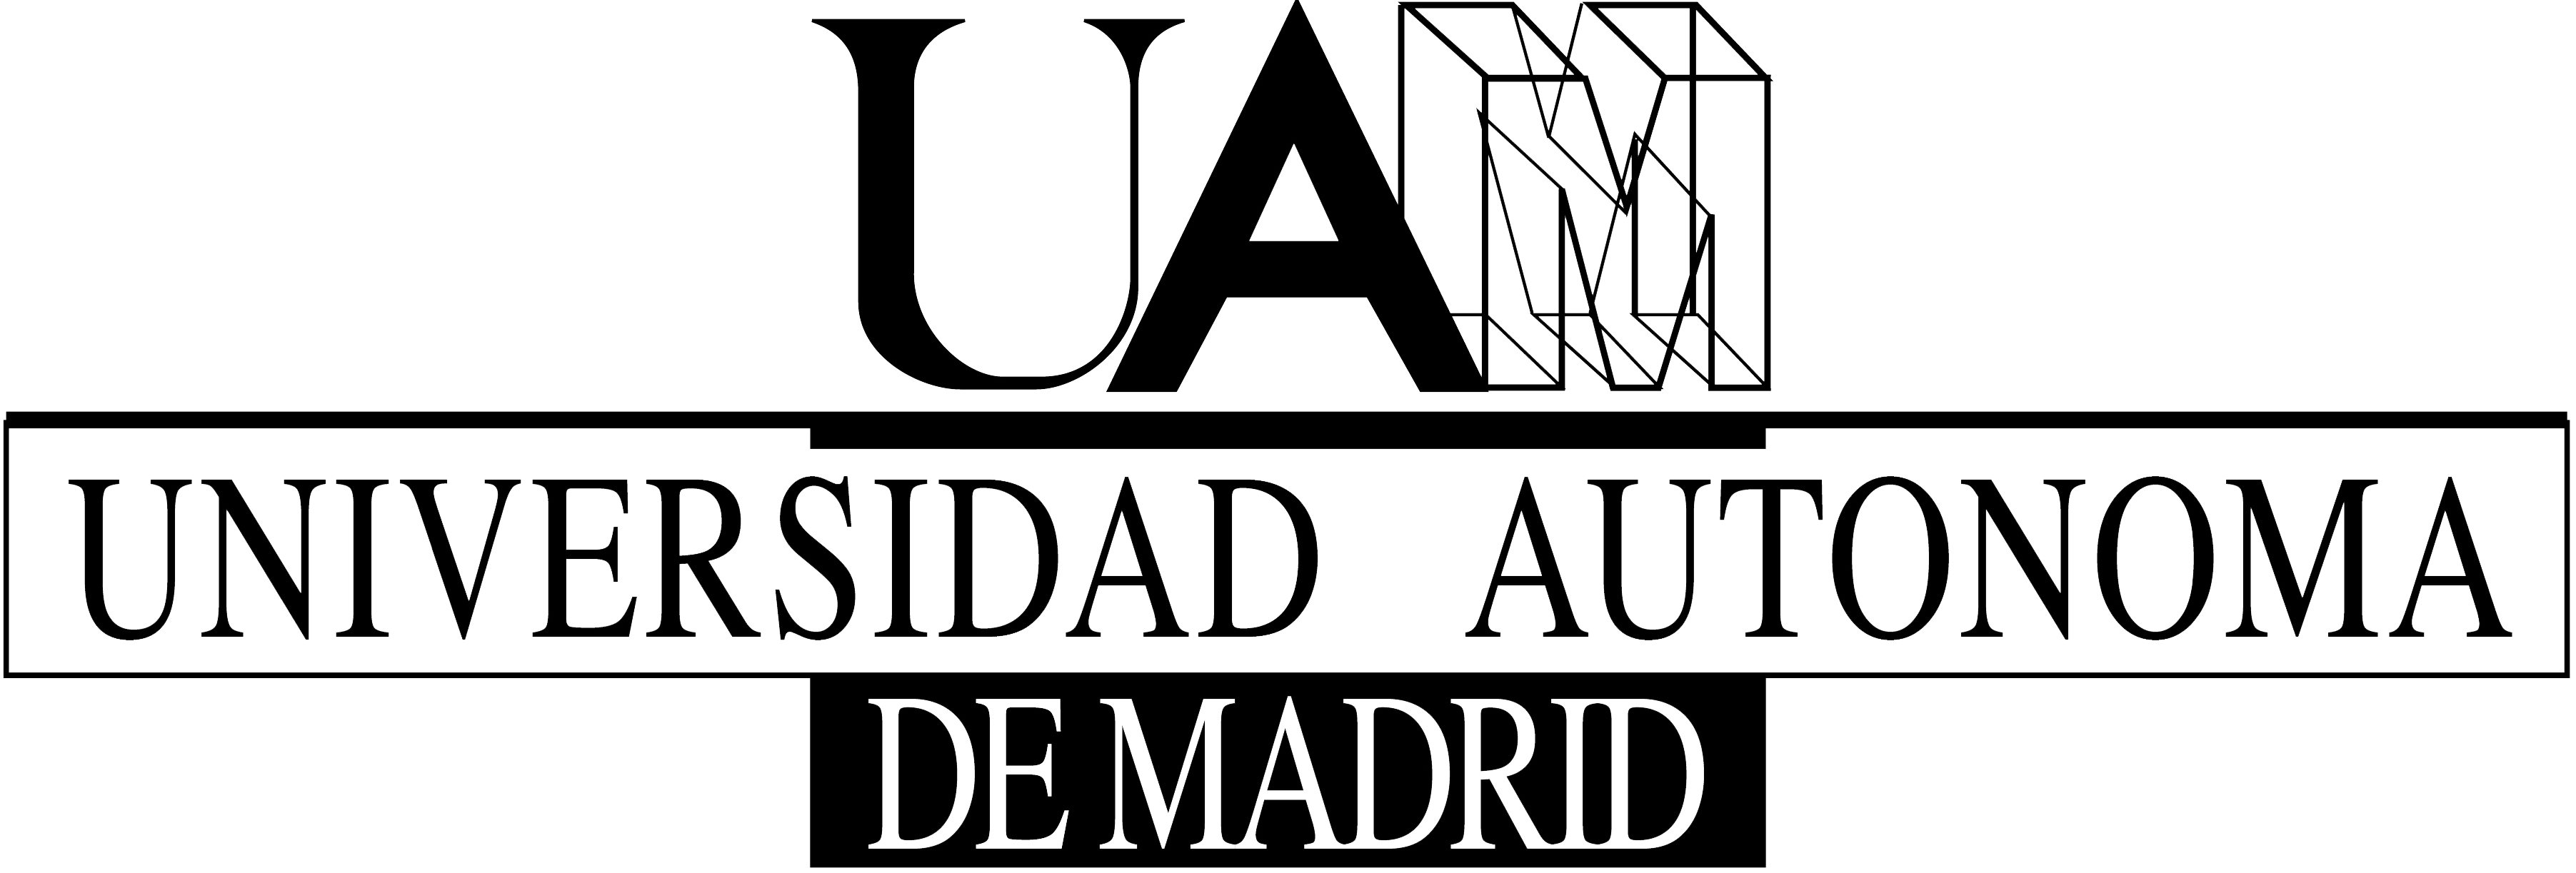 UAM Logo - Logo UAM | Emprendedurismo | Home decor, Decor